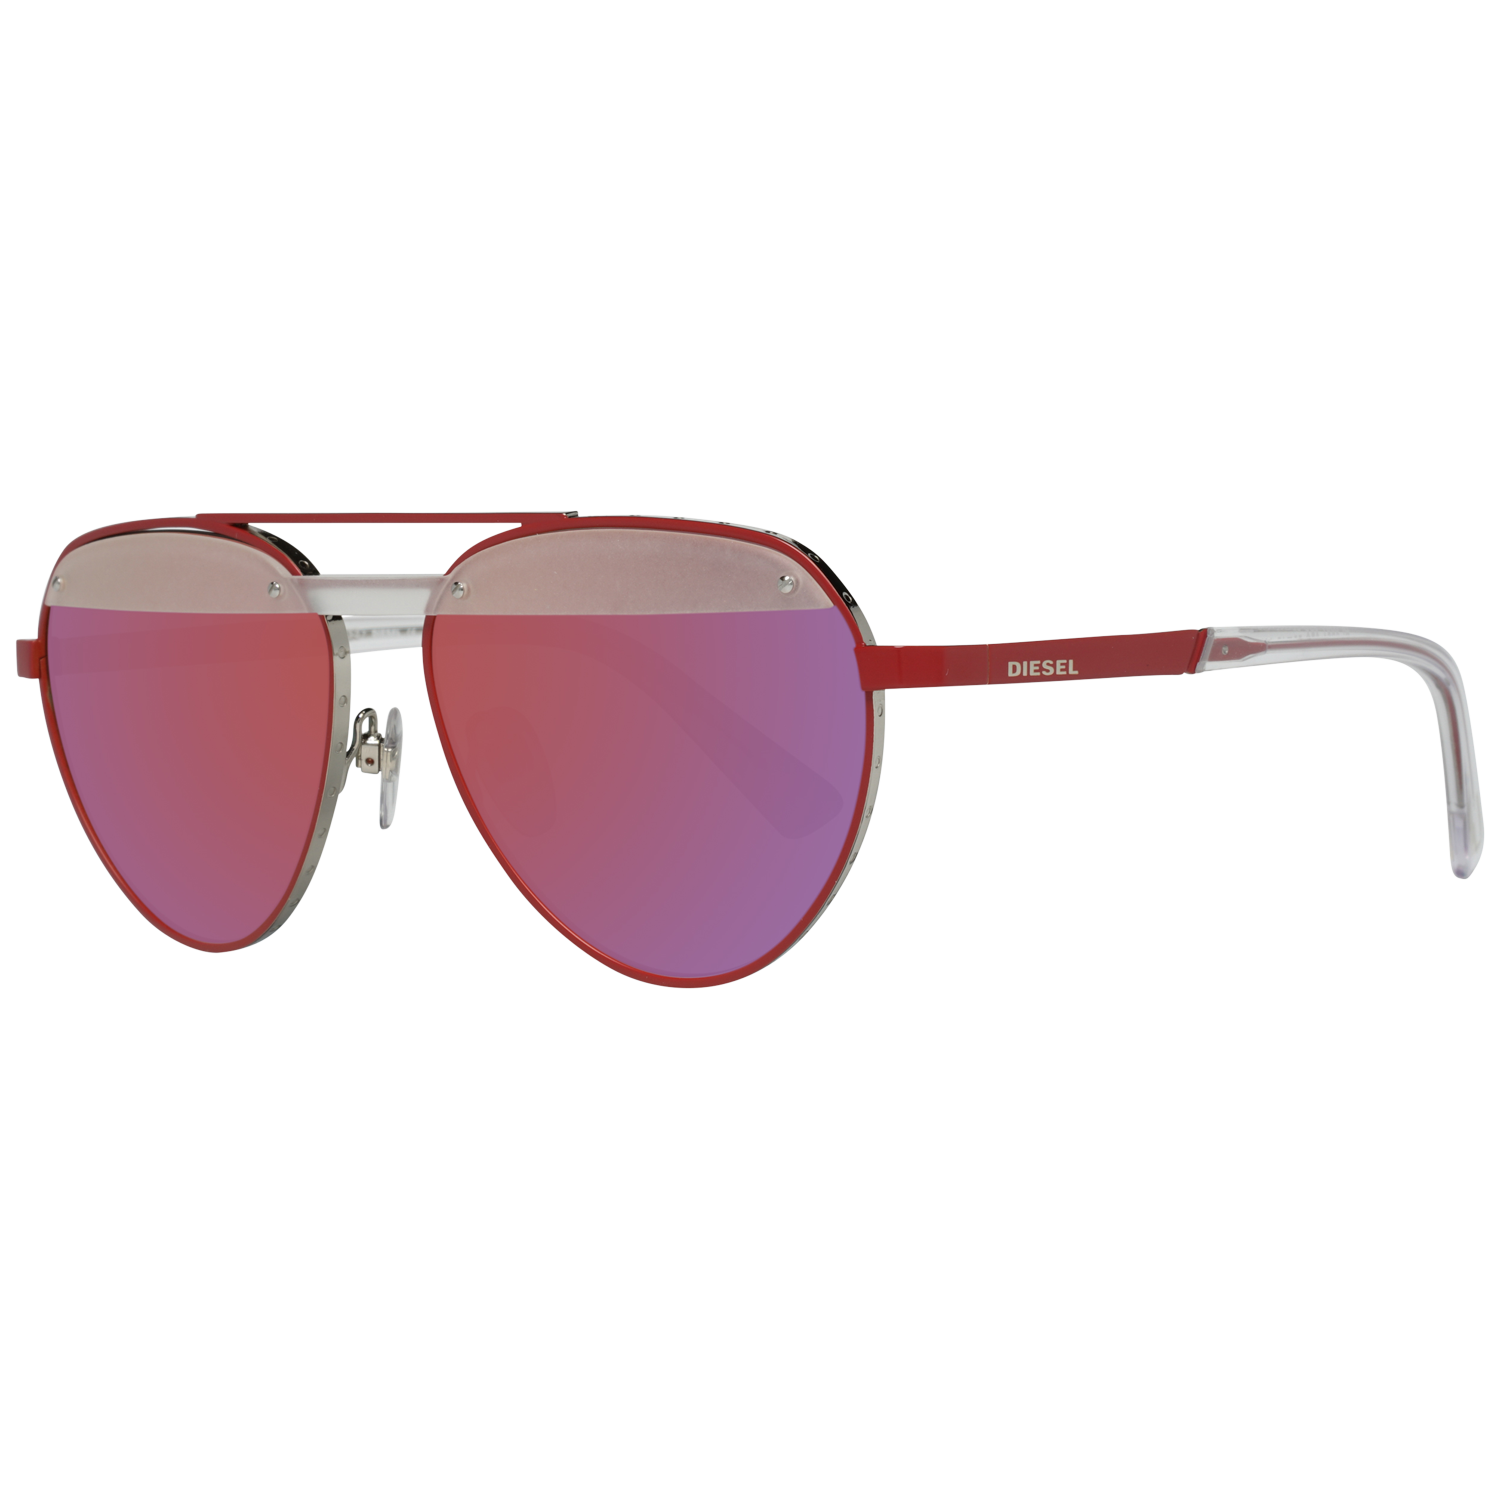 Diesel Sunglasses DL0261 67Q 55